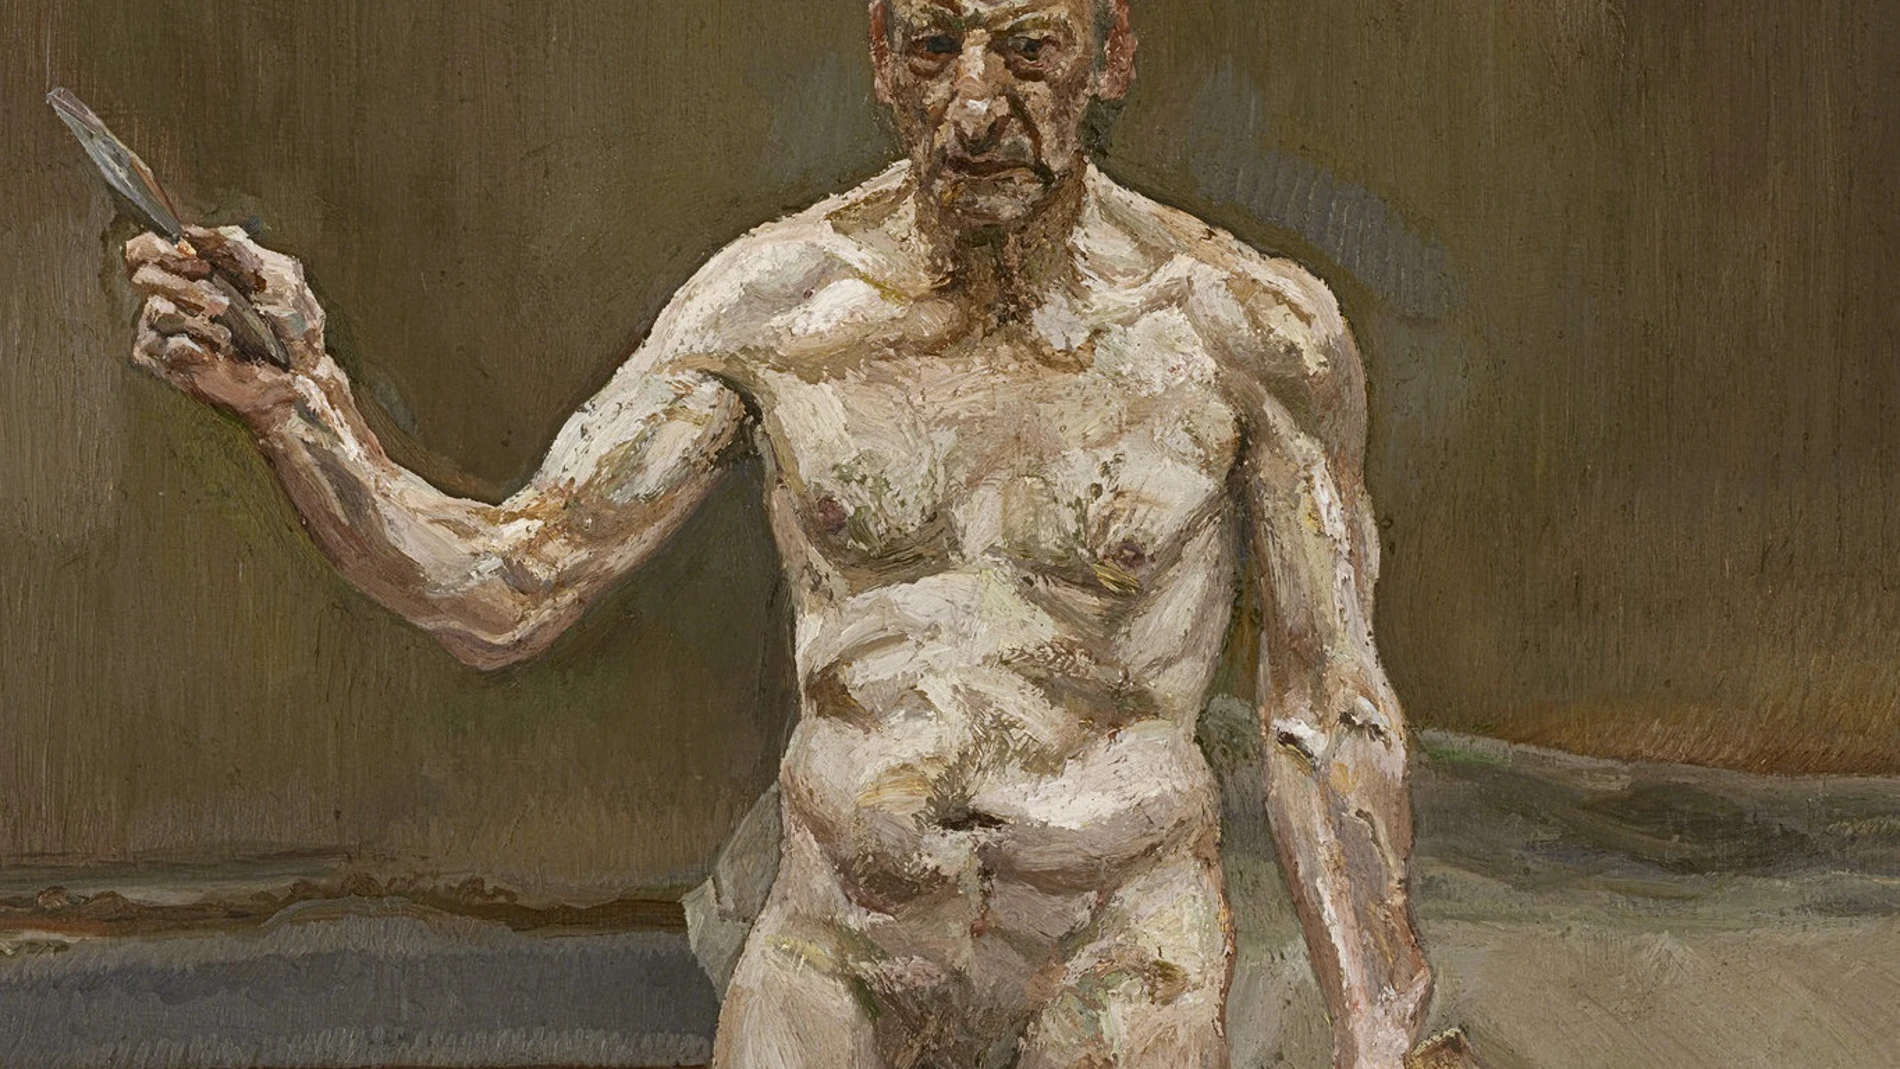 Uno de los "Reflection" de Freud, auto-retrato del artista británico